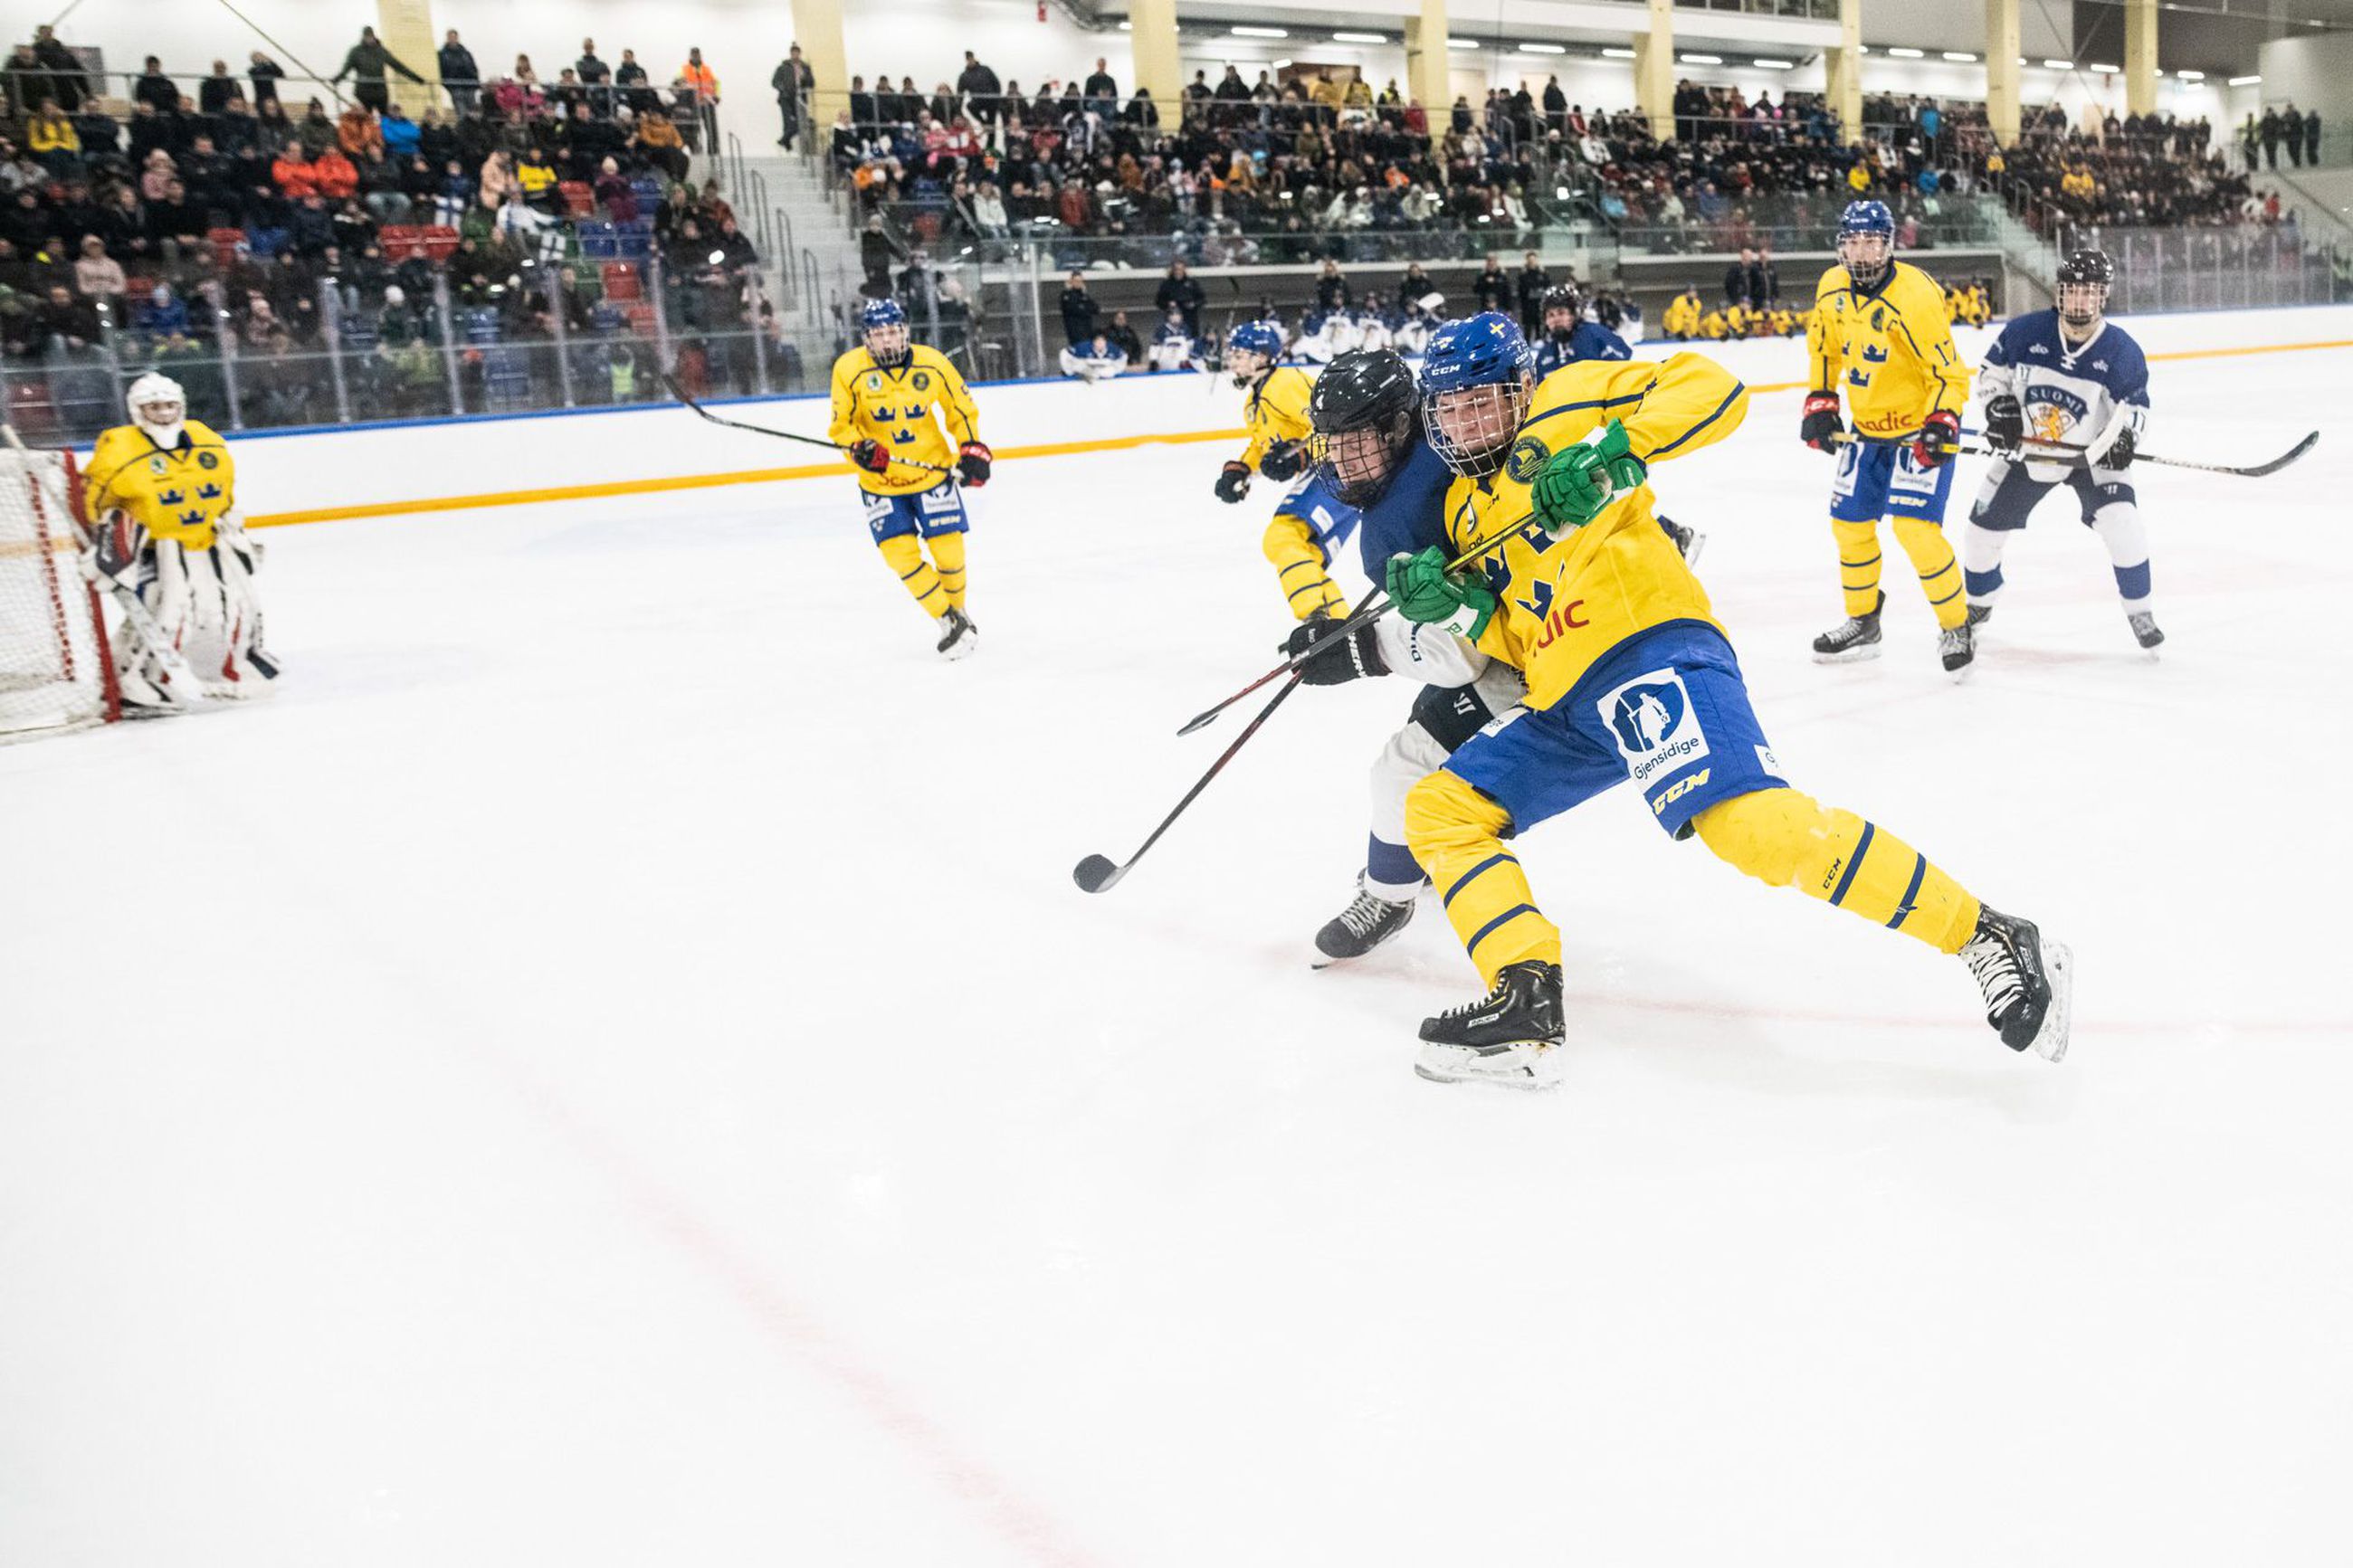 Kuusamon jäähalli täyttyi maaottelussa – Suomi voitti Ruotsin |  Koillissanomat